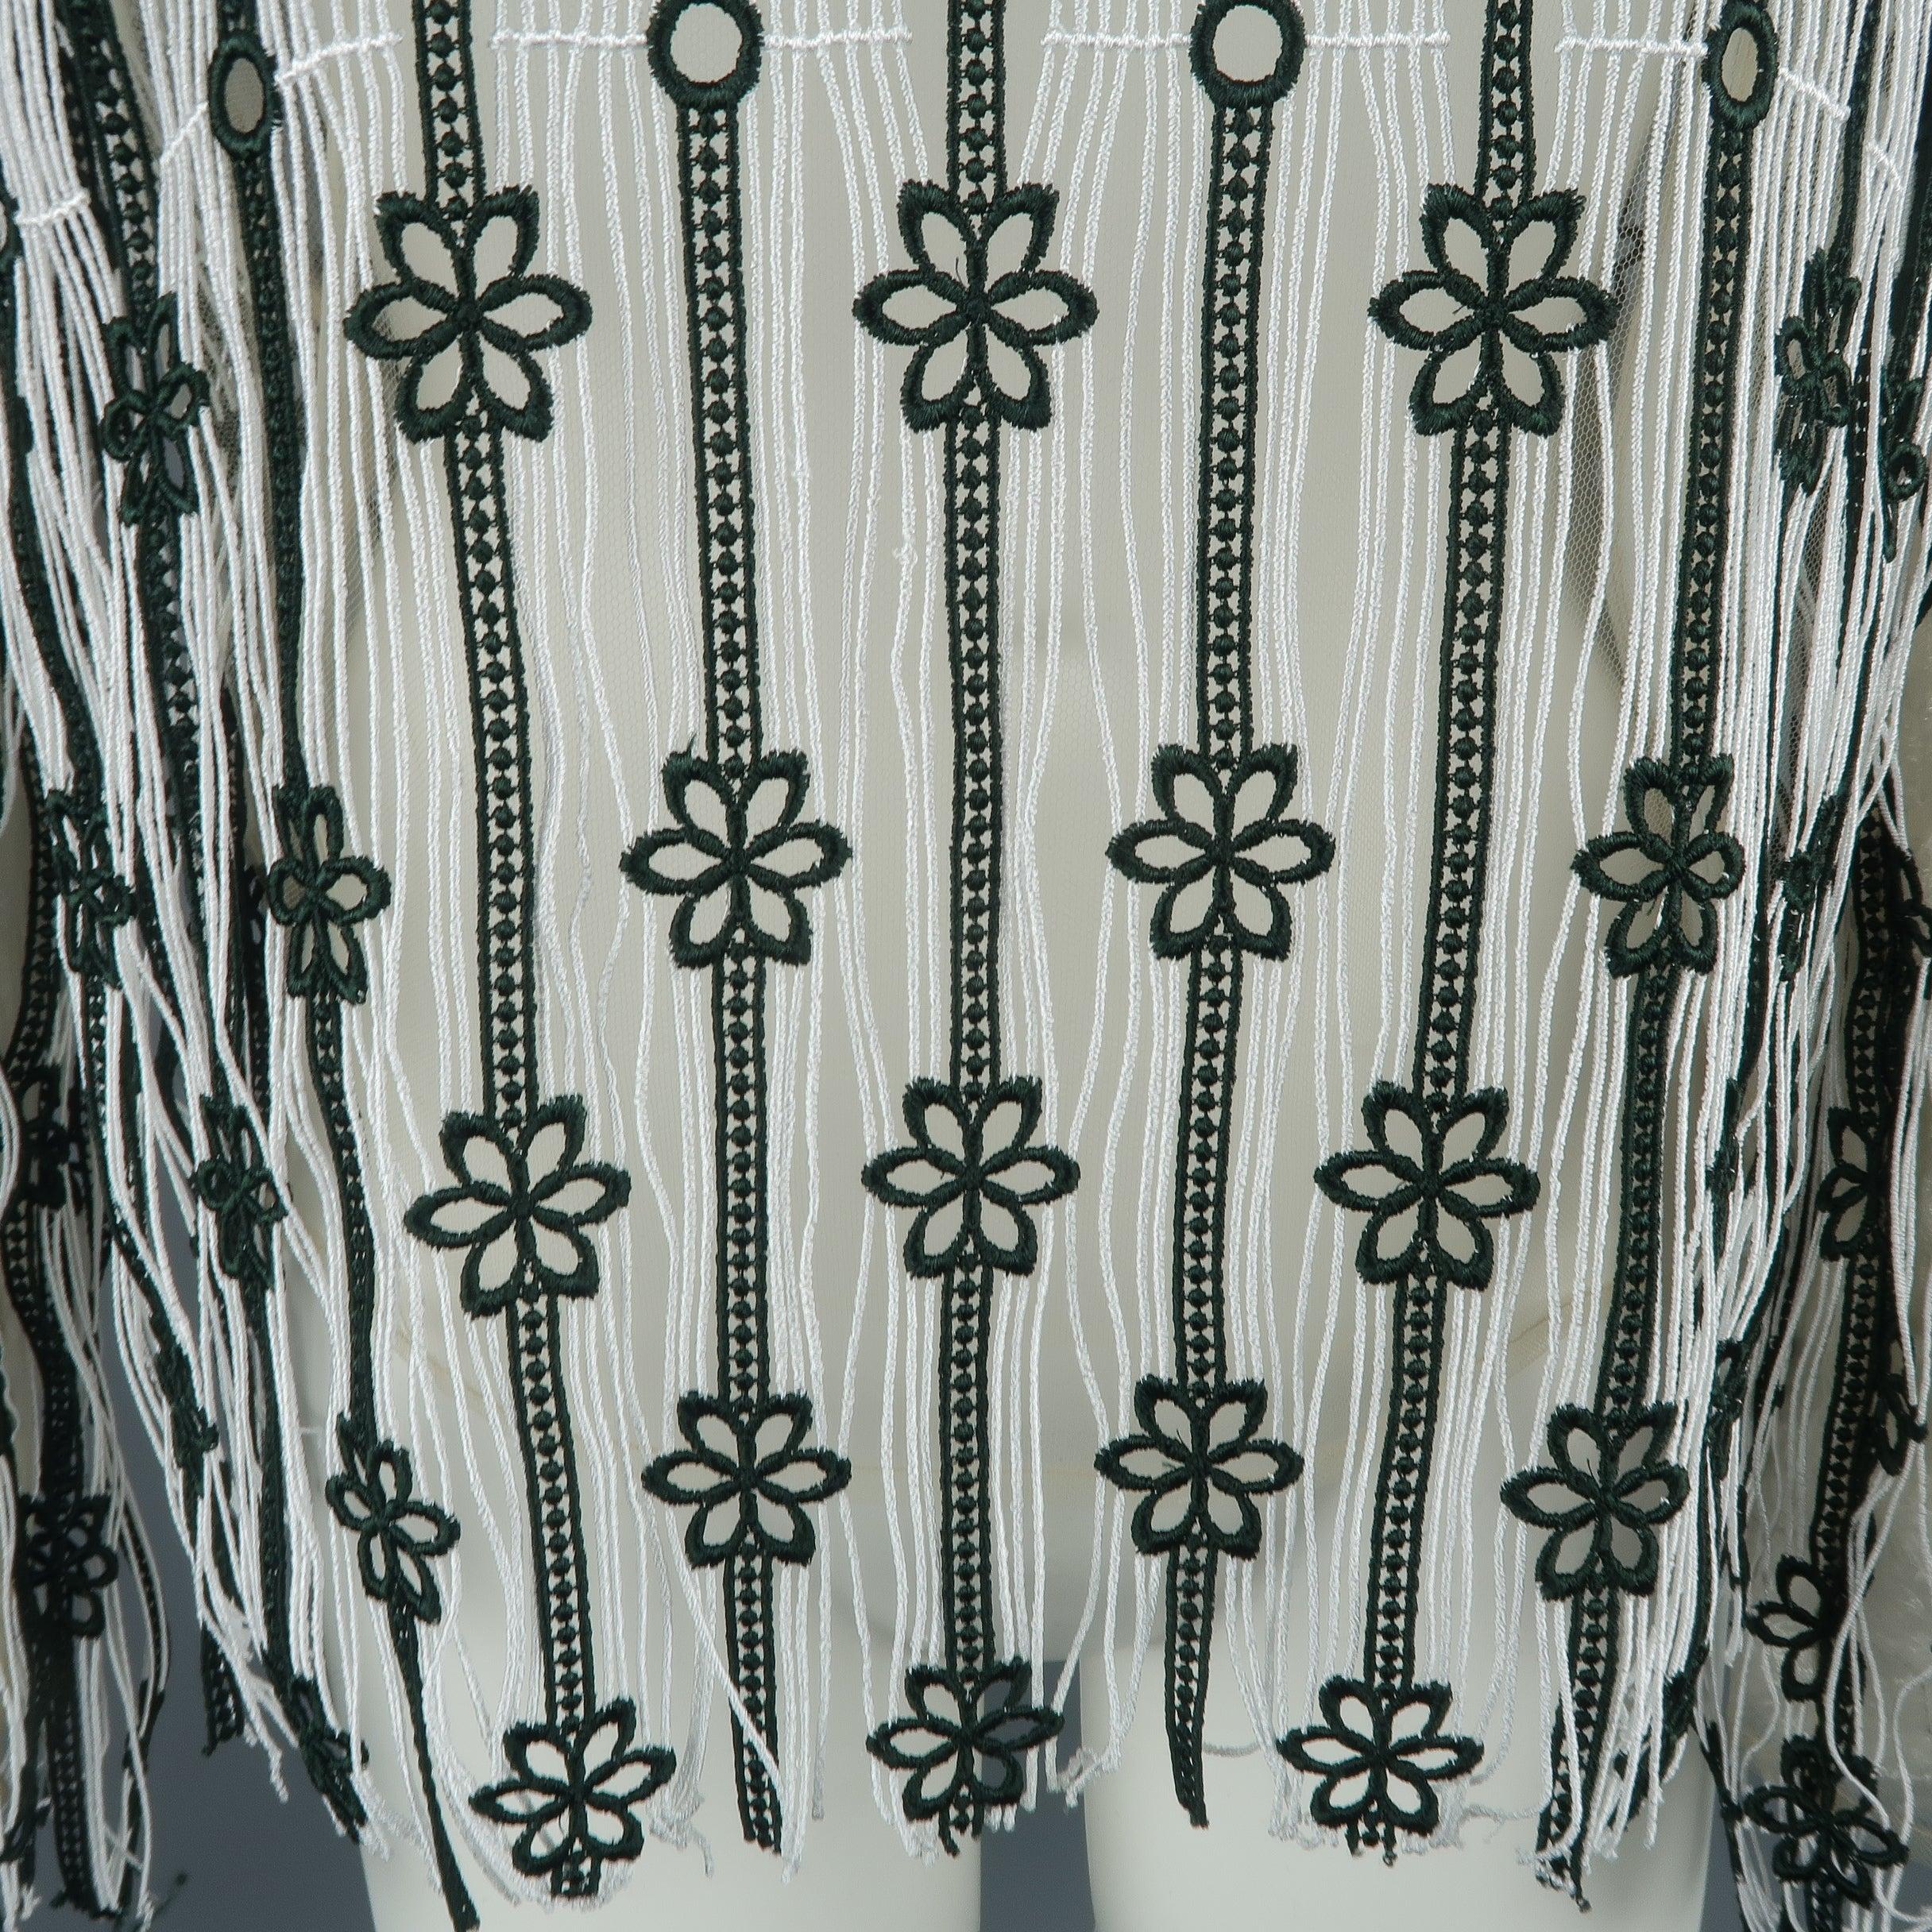 La blouse CHRISTIAN DIOR de la collection RESORT 2016 Palm Springs se présente en dentelle à franges rayée blanche et vert forêt avec accents floraux, et doublure en tulle stretch beige. Usure mineure et étiquettes enlevées. En l'état.
Bon état